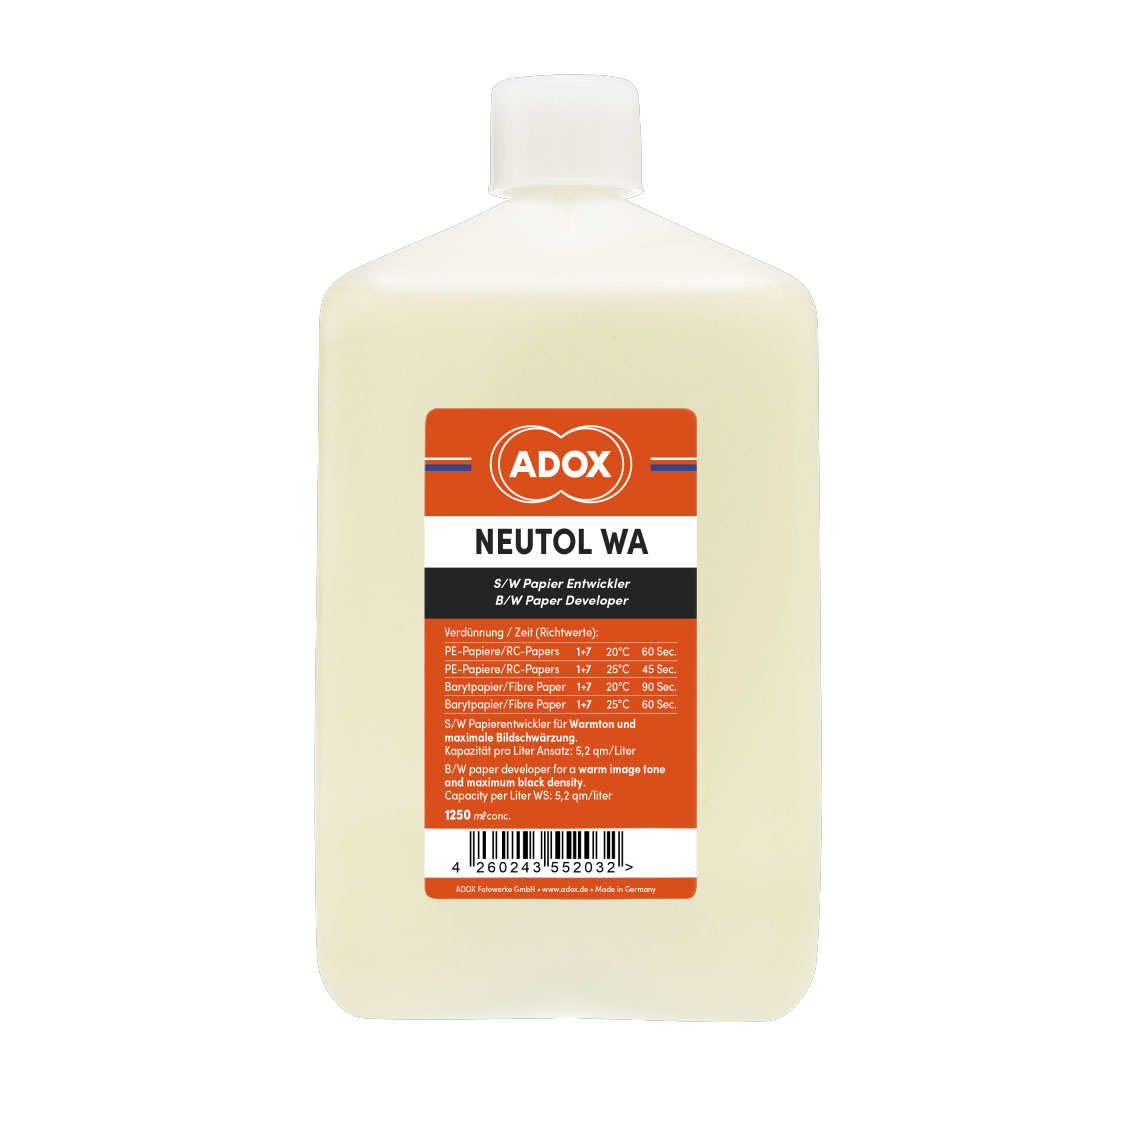 Adox ADOTOL/NEUTOL LIQUID WA 1,25 L., per 10-20LT (Warmtone)